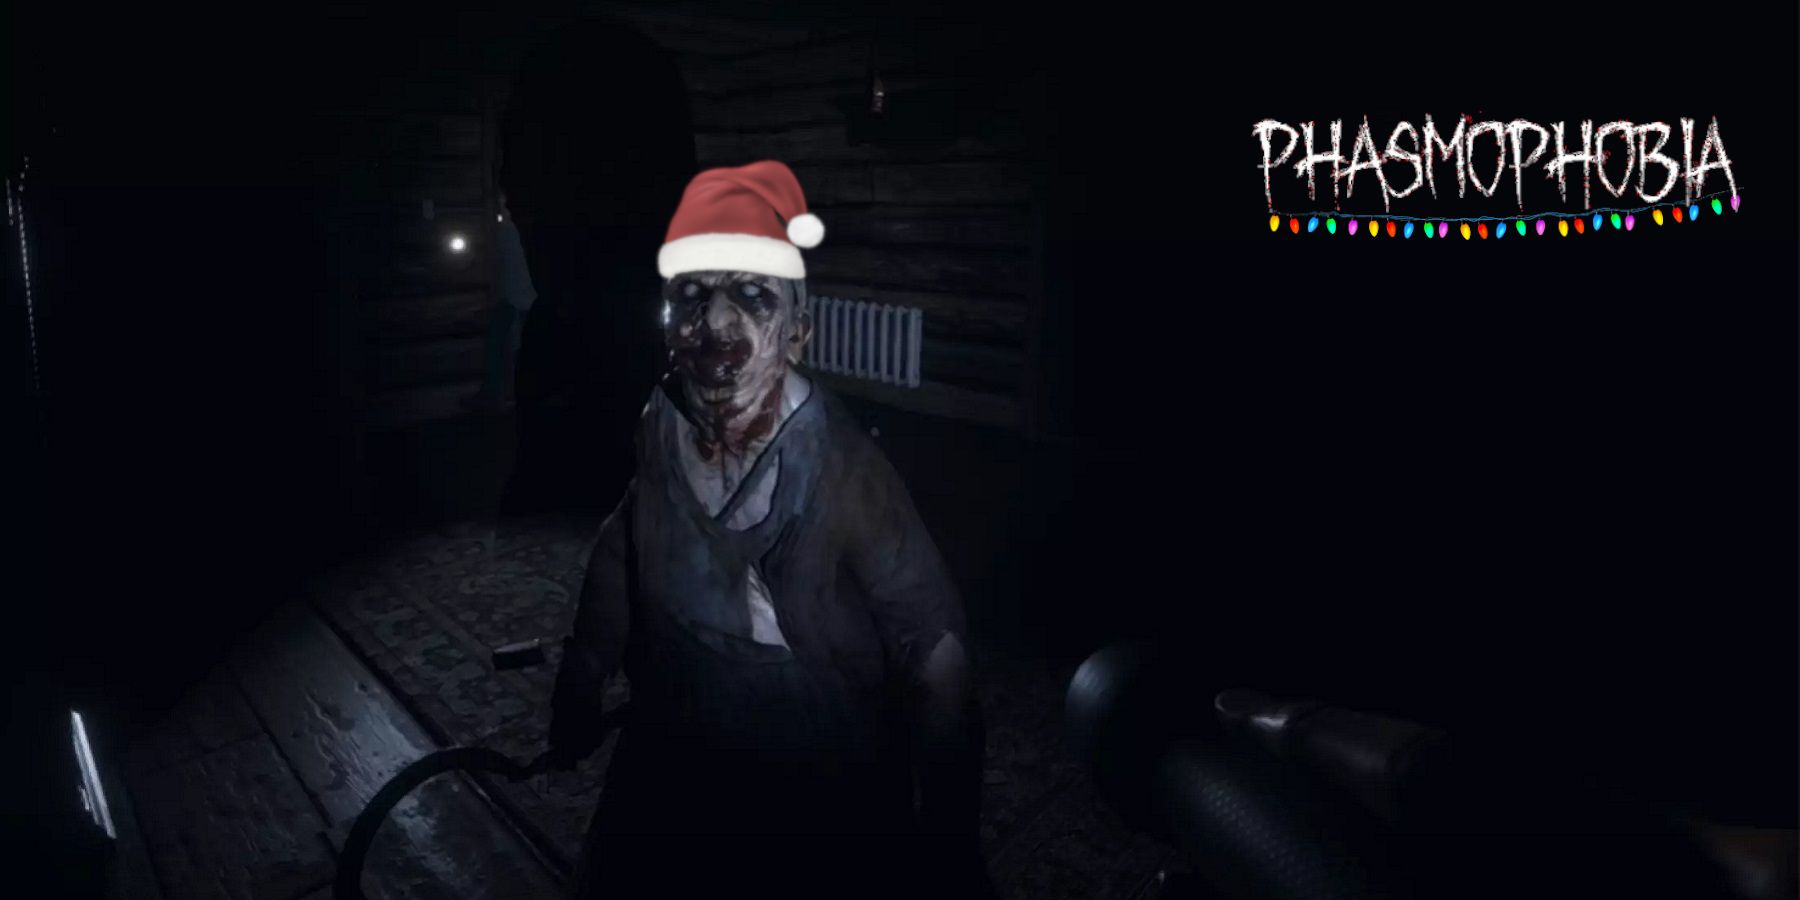 Скриншот из «Фазмофобии», показывающий одного из призраков в рождественской шапке.